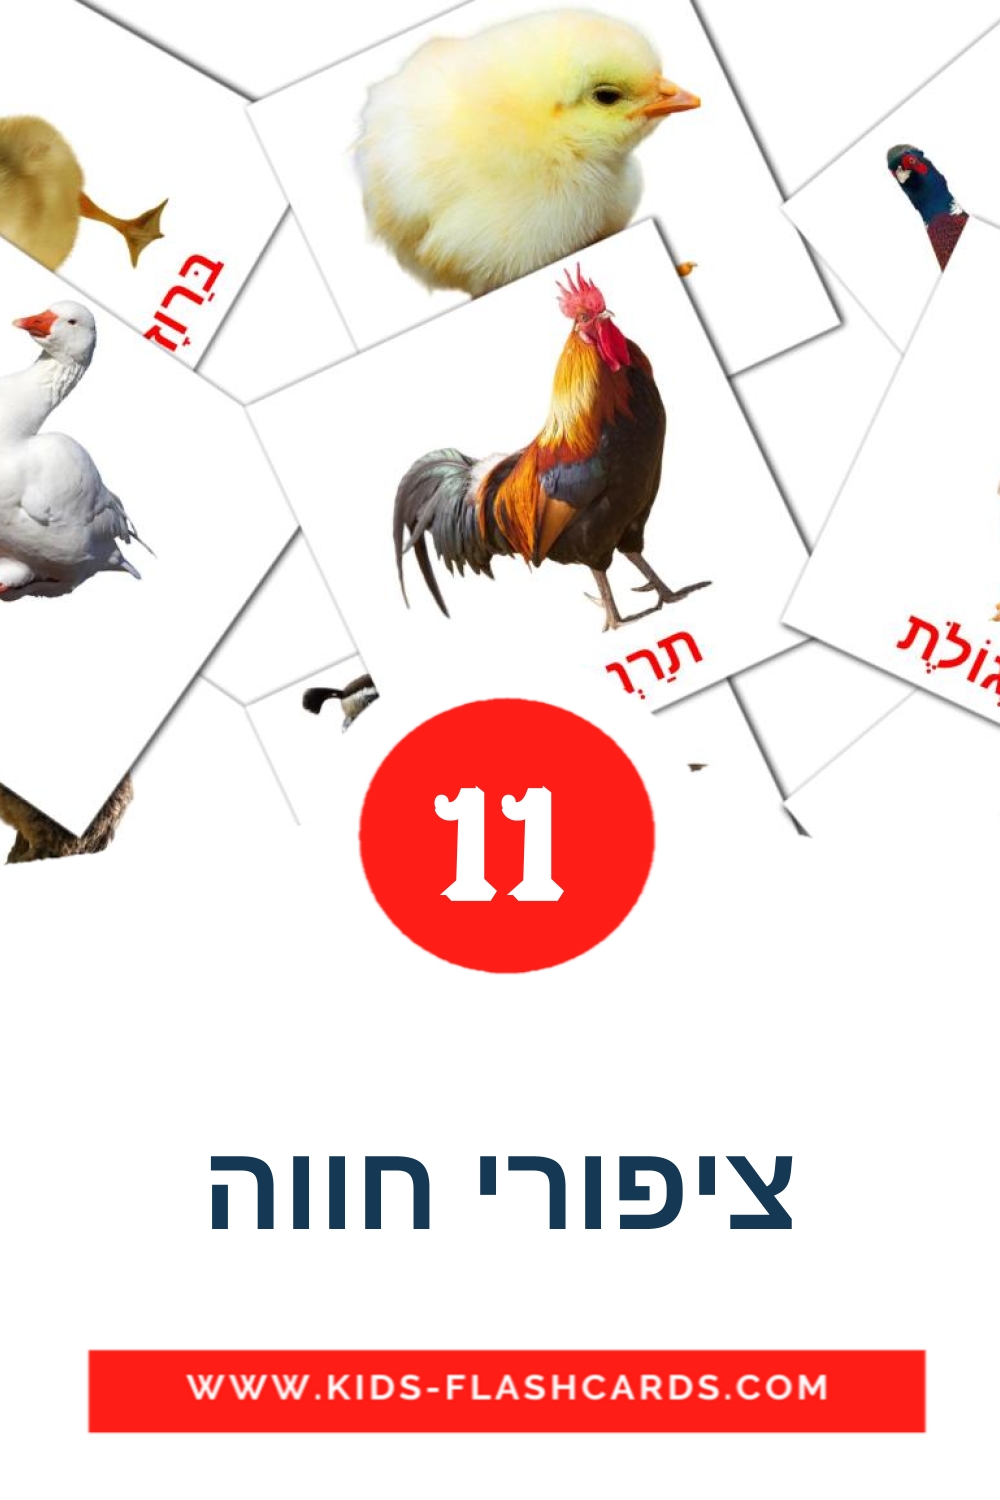 11 ציפורי חווה fotokaarten voor kleuters in het hebreeuws